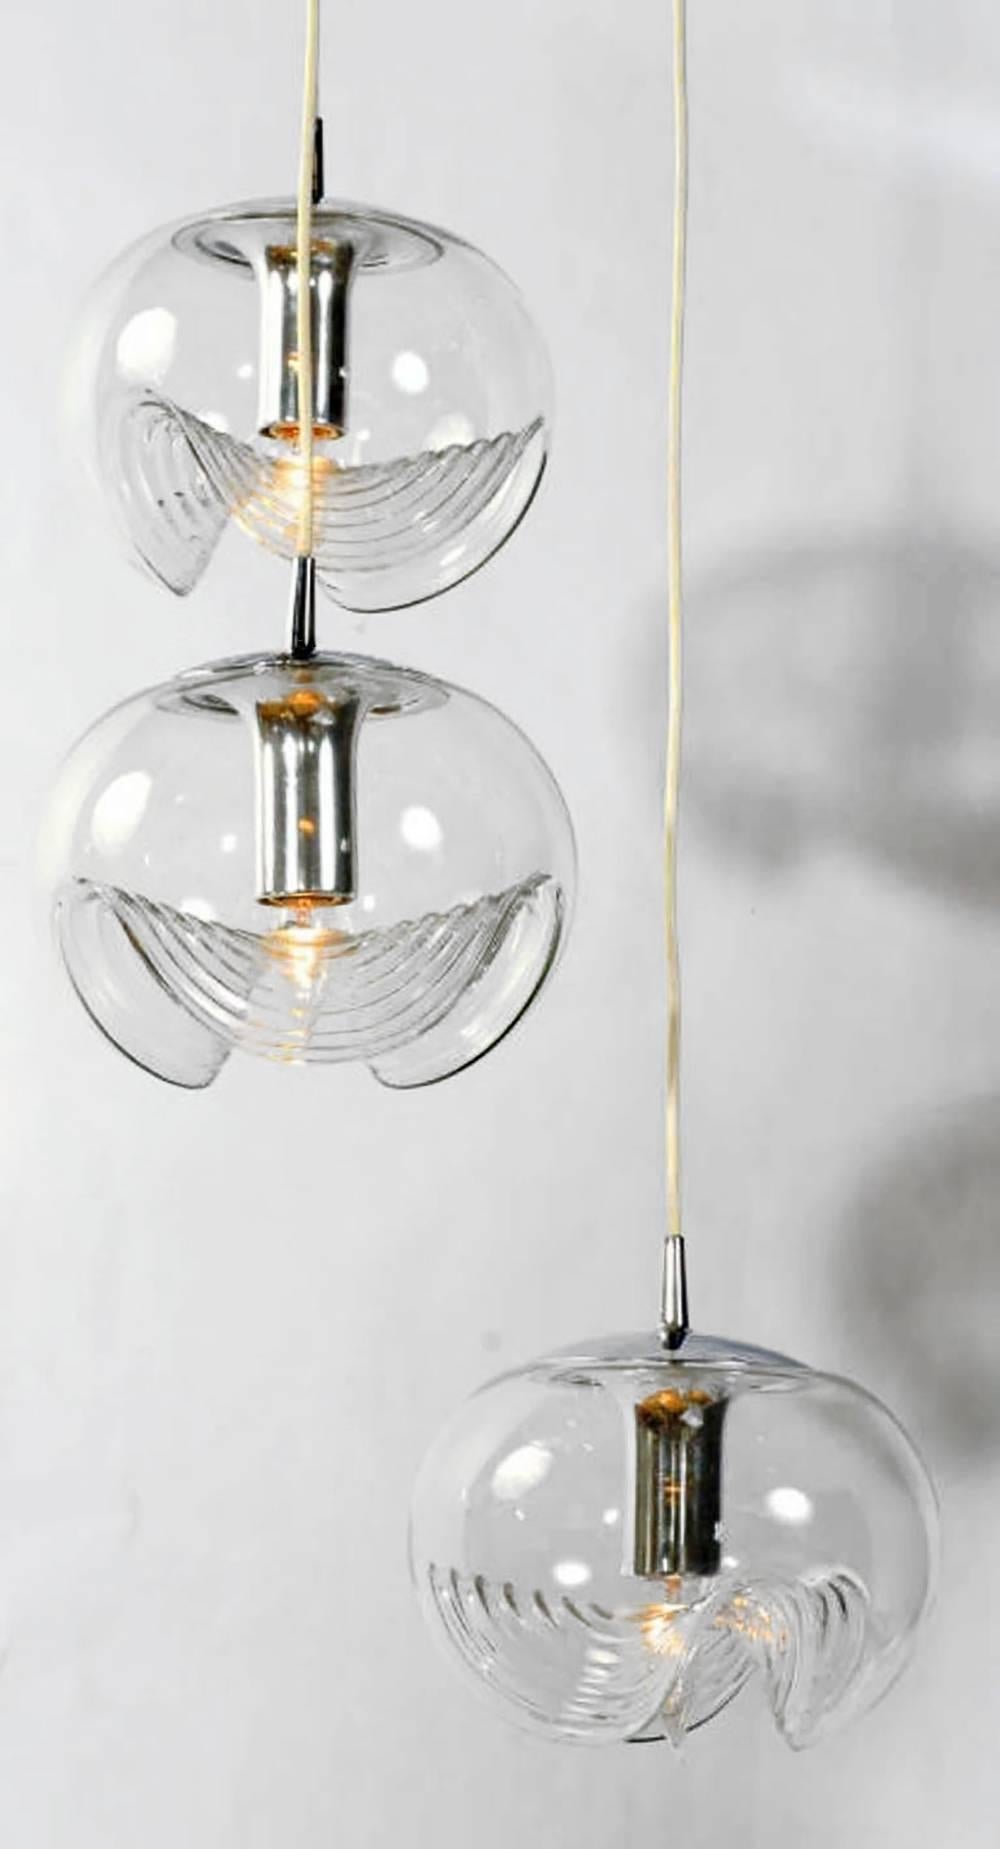 Triple blown glass globe pendant light by Koch and Lowy. 10